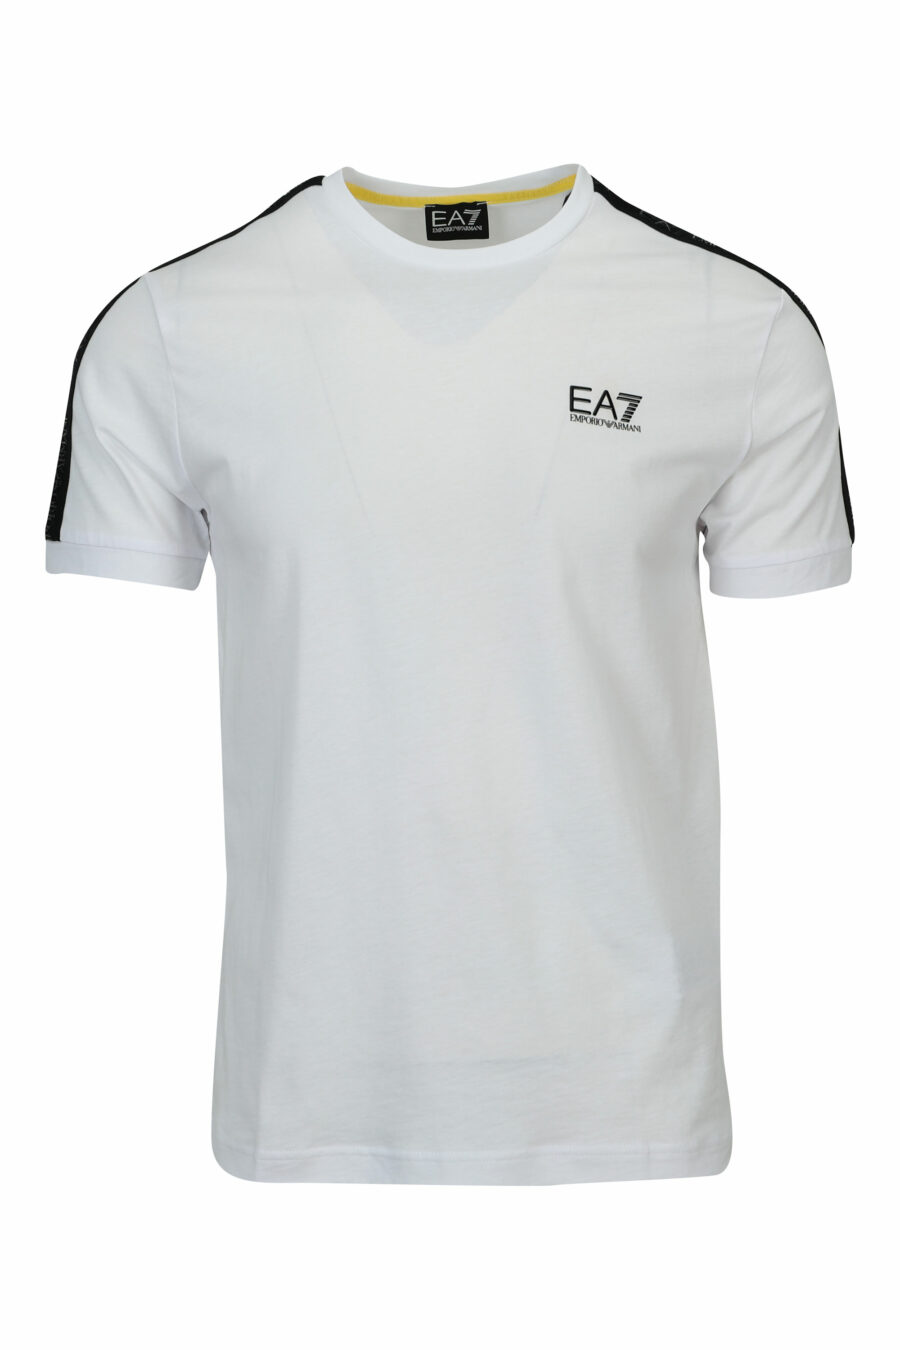 Camiseta blanca con minilogo en cinta "lux identity" negro - 8057970711308